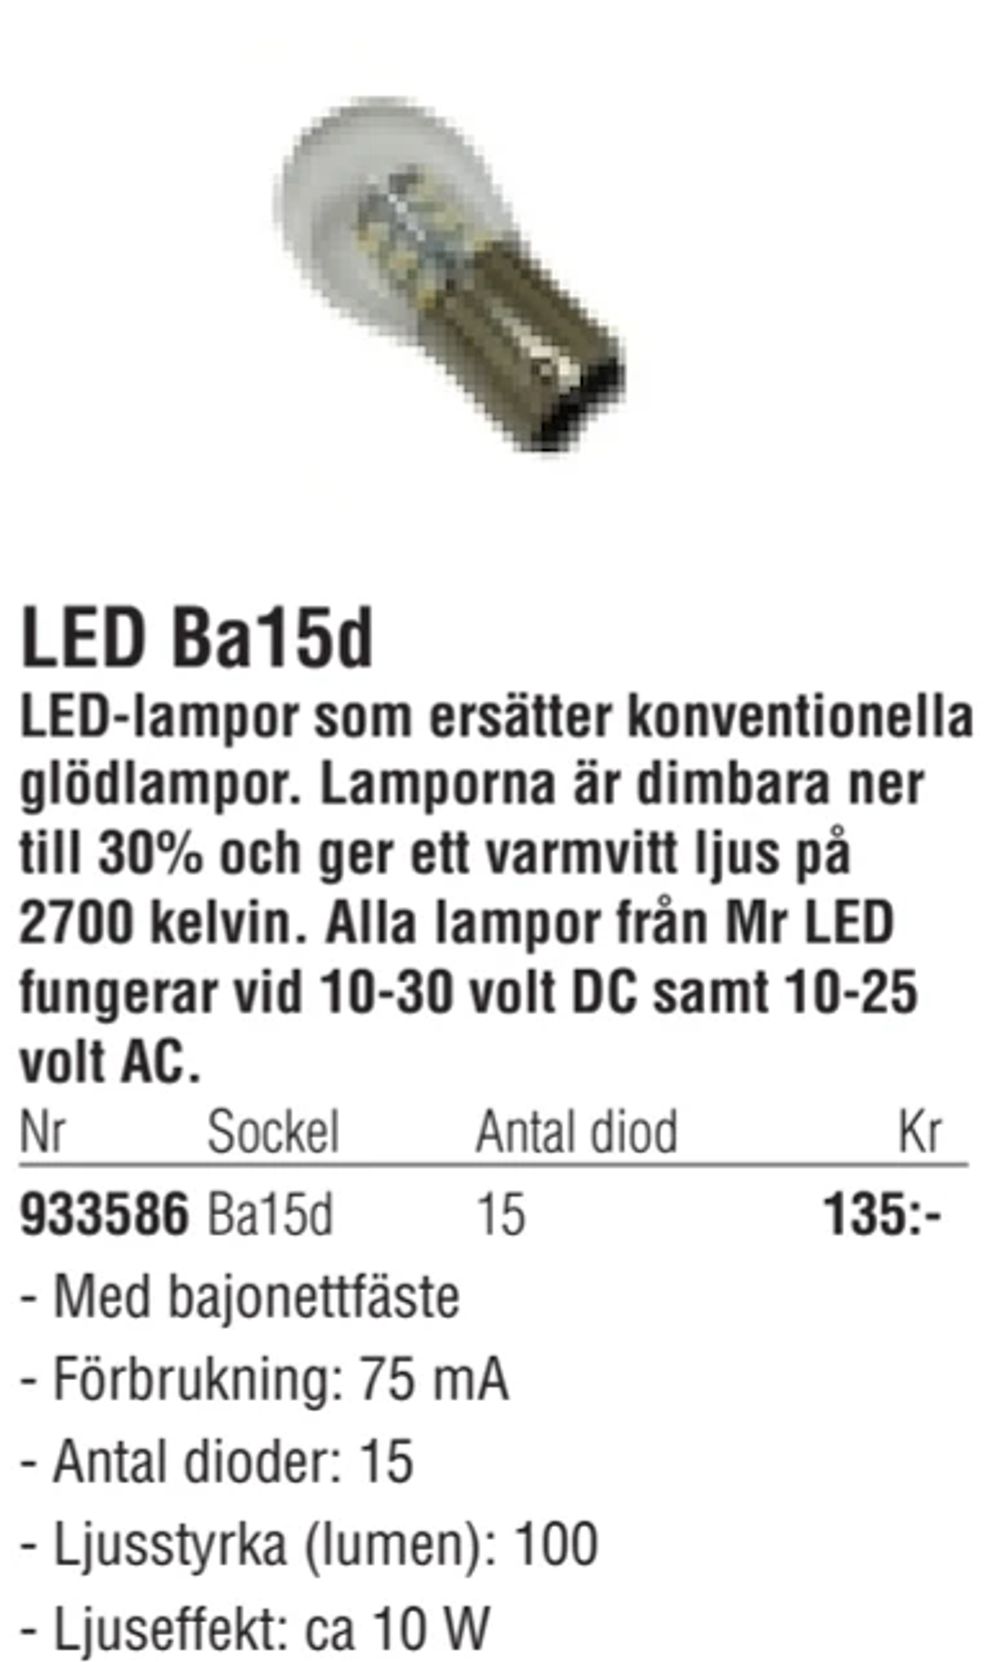 Erbjudanden på LED Ba15d från Erlandsons Brygga för 135 kr